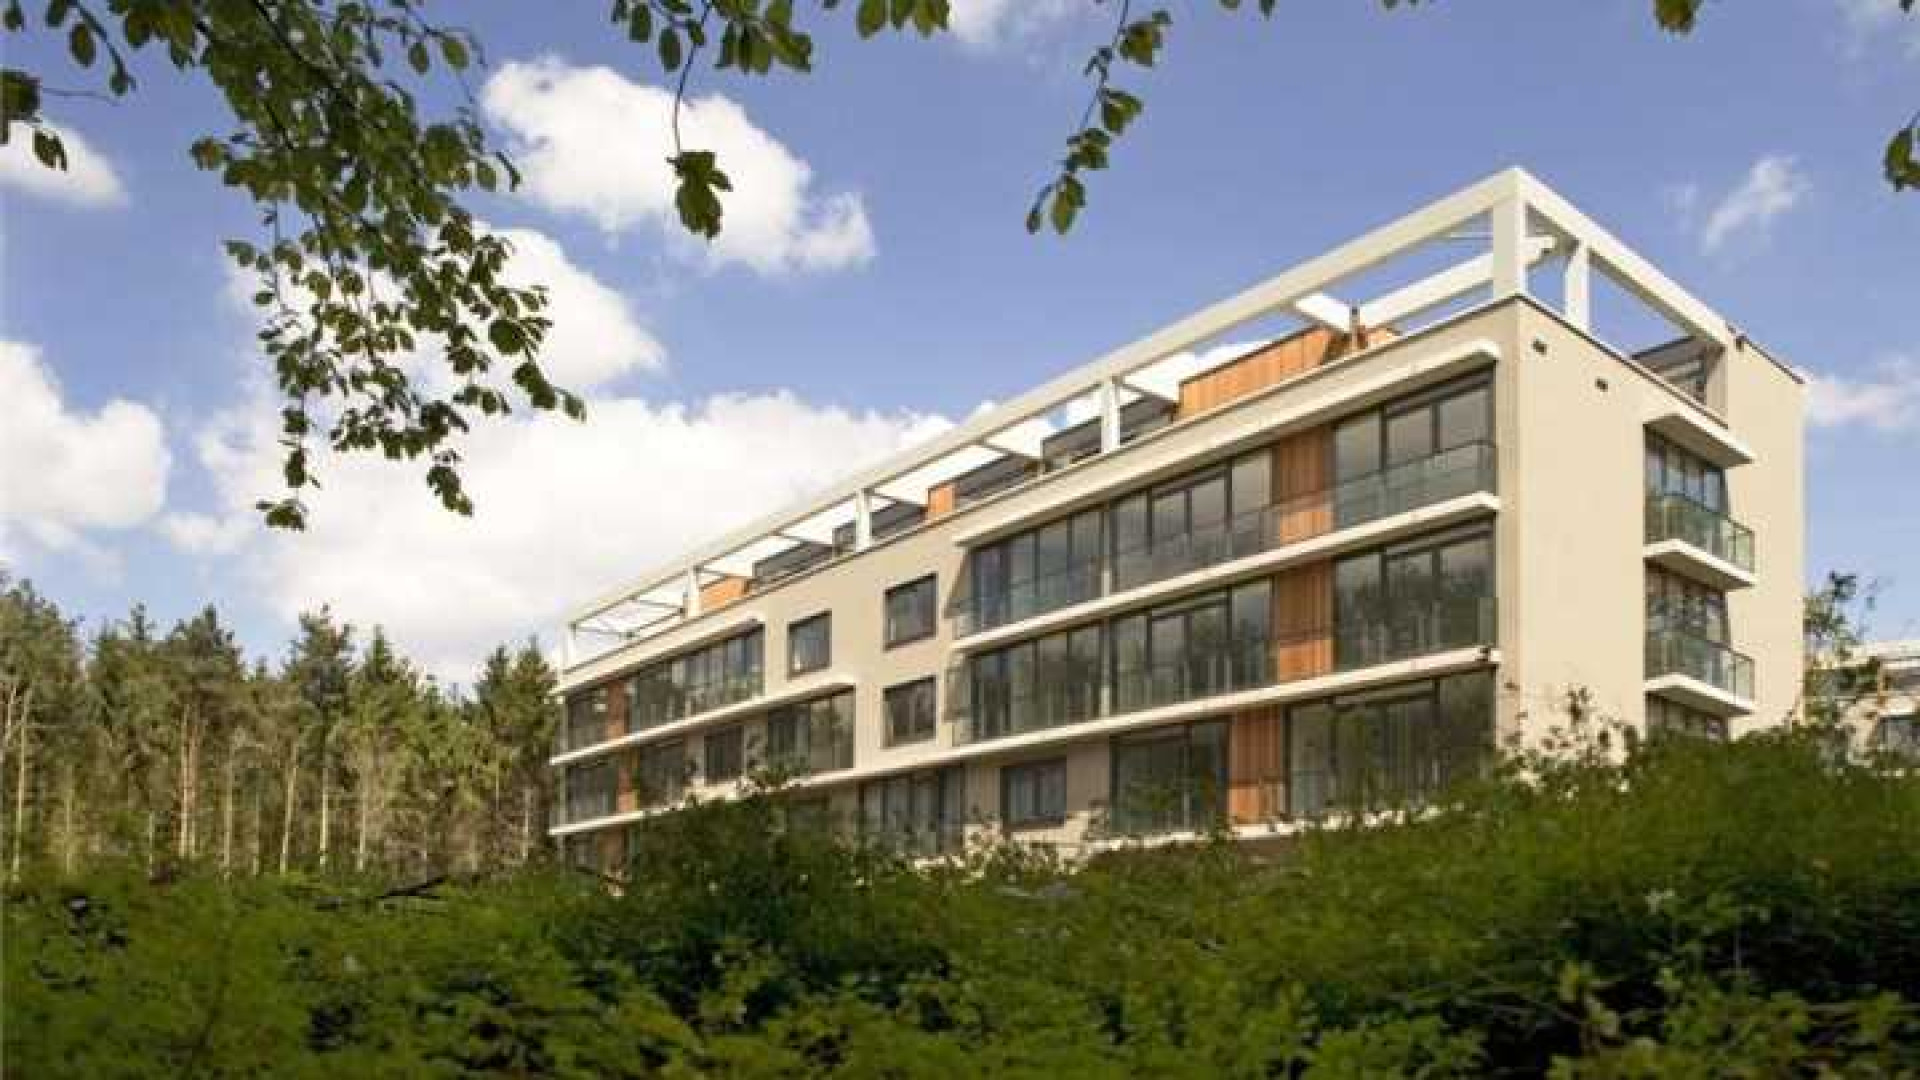 Ilse de Lange huurt luxe penthouse in Hilversum. Zie foto's 1